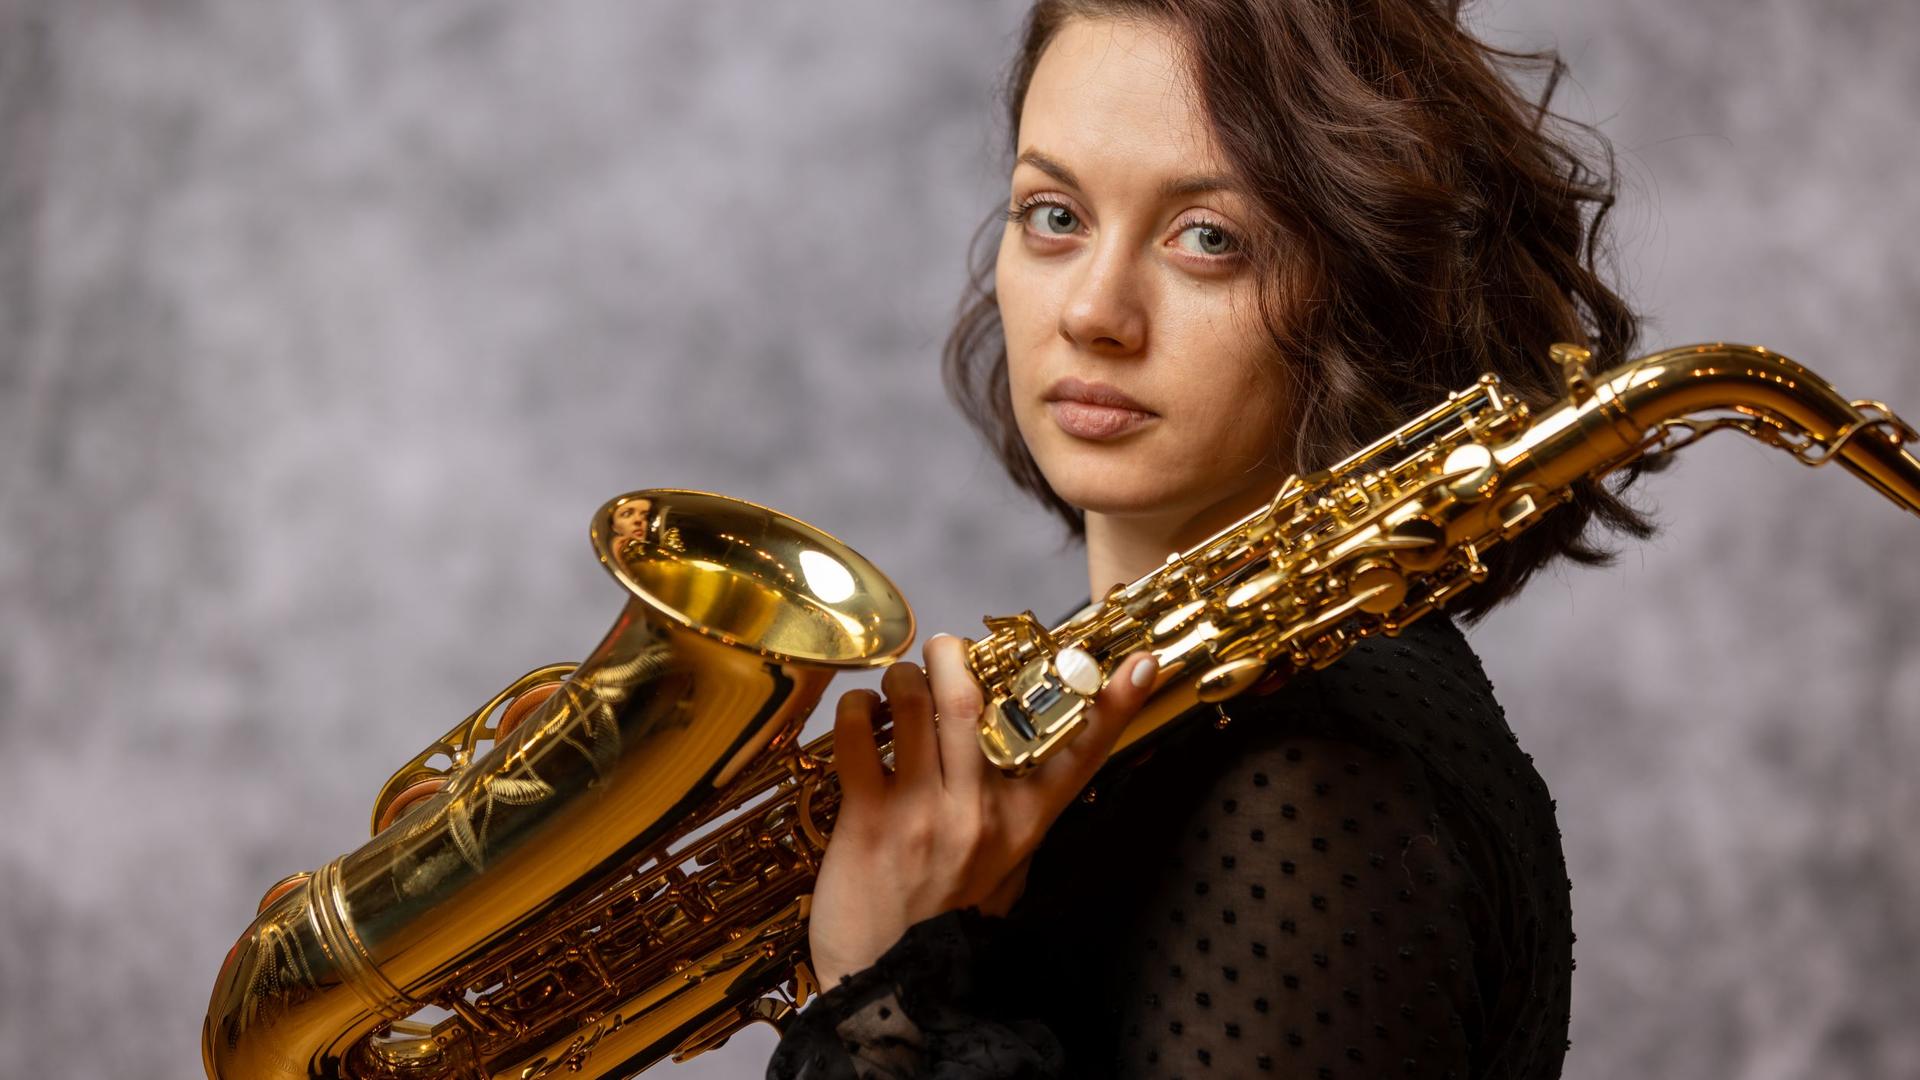 Eine junge Frau mit braunen Haaren dreht ihren Kopf seitwärts und blickt in die Kamera. In ihrer linken Hand hält sie ein Saxofon, das Instrument lehnt auf ihrer linken Schulter.